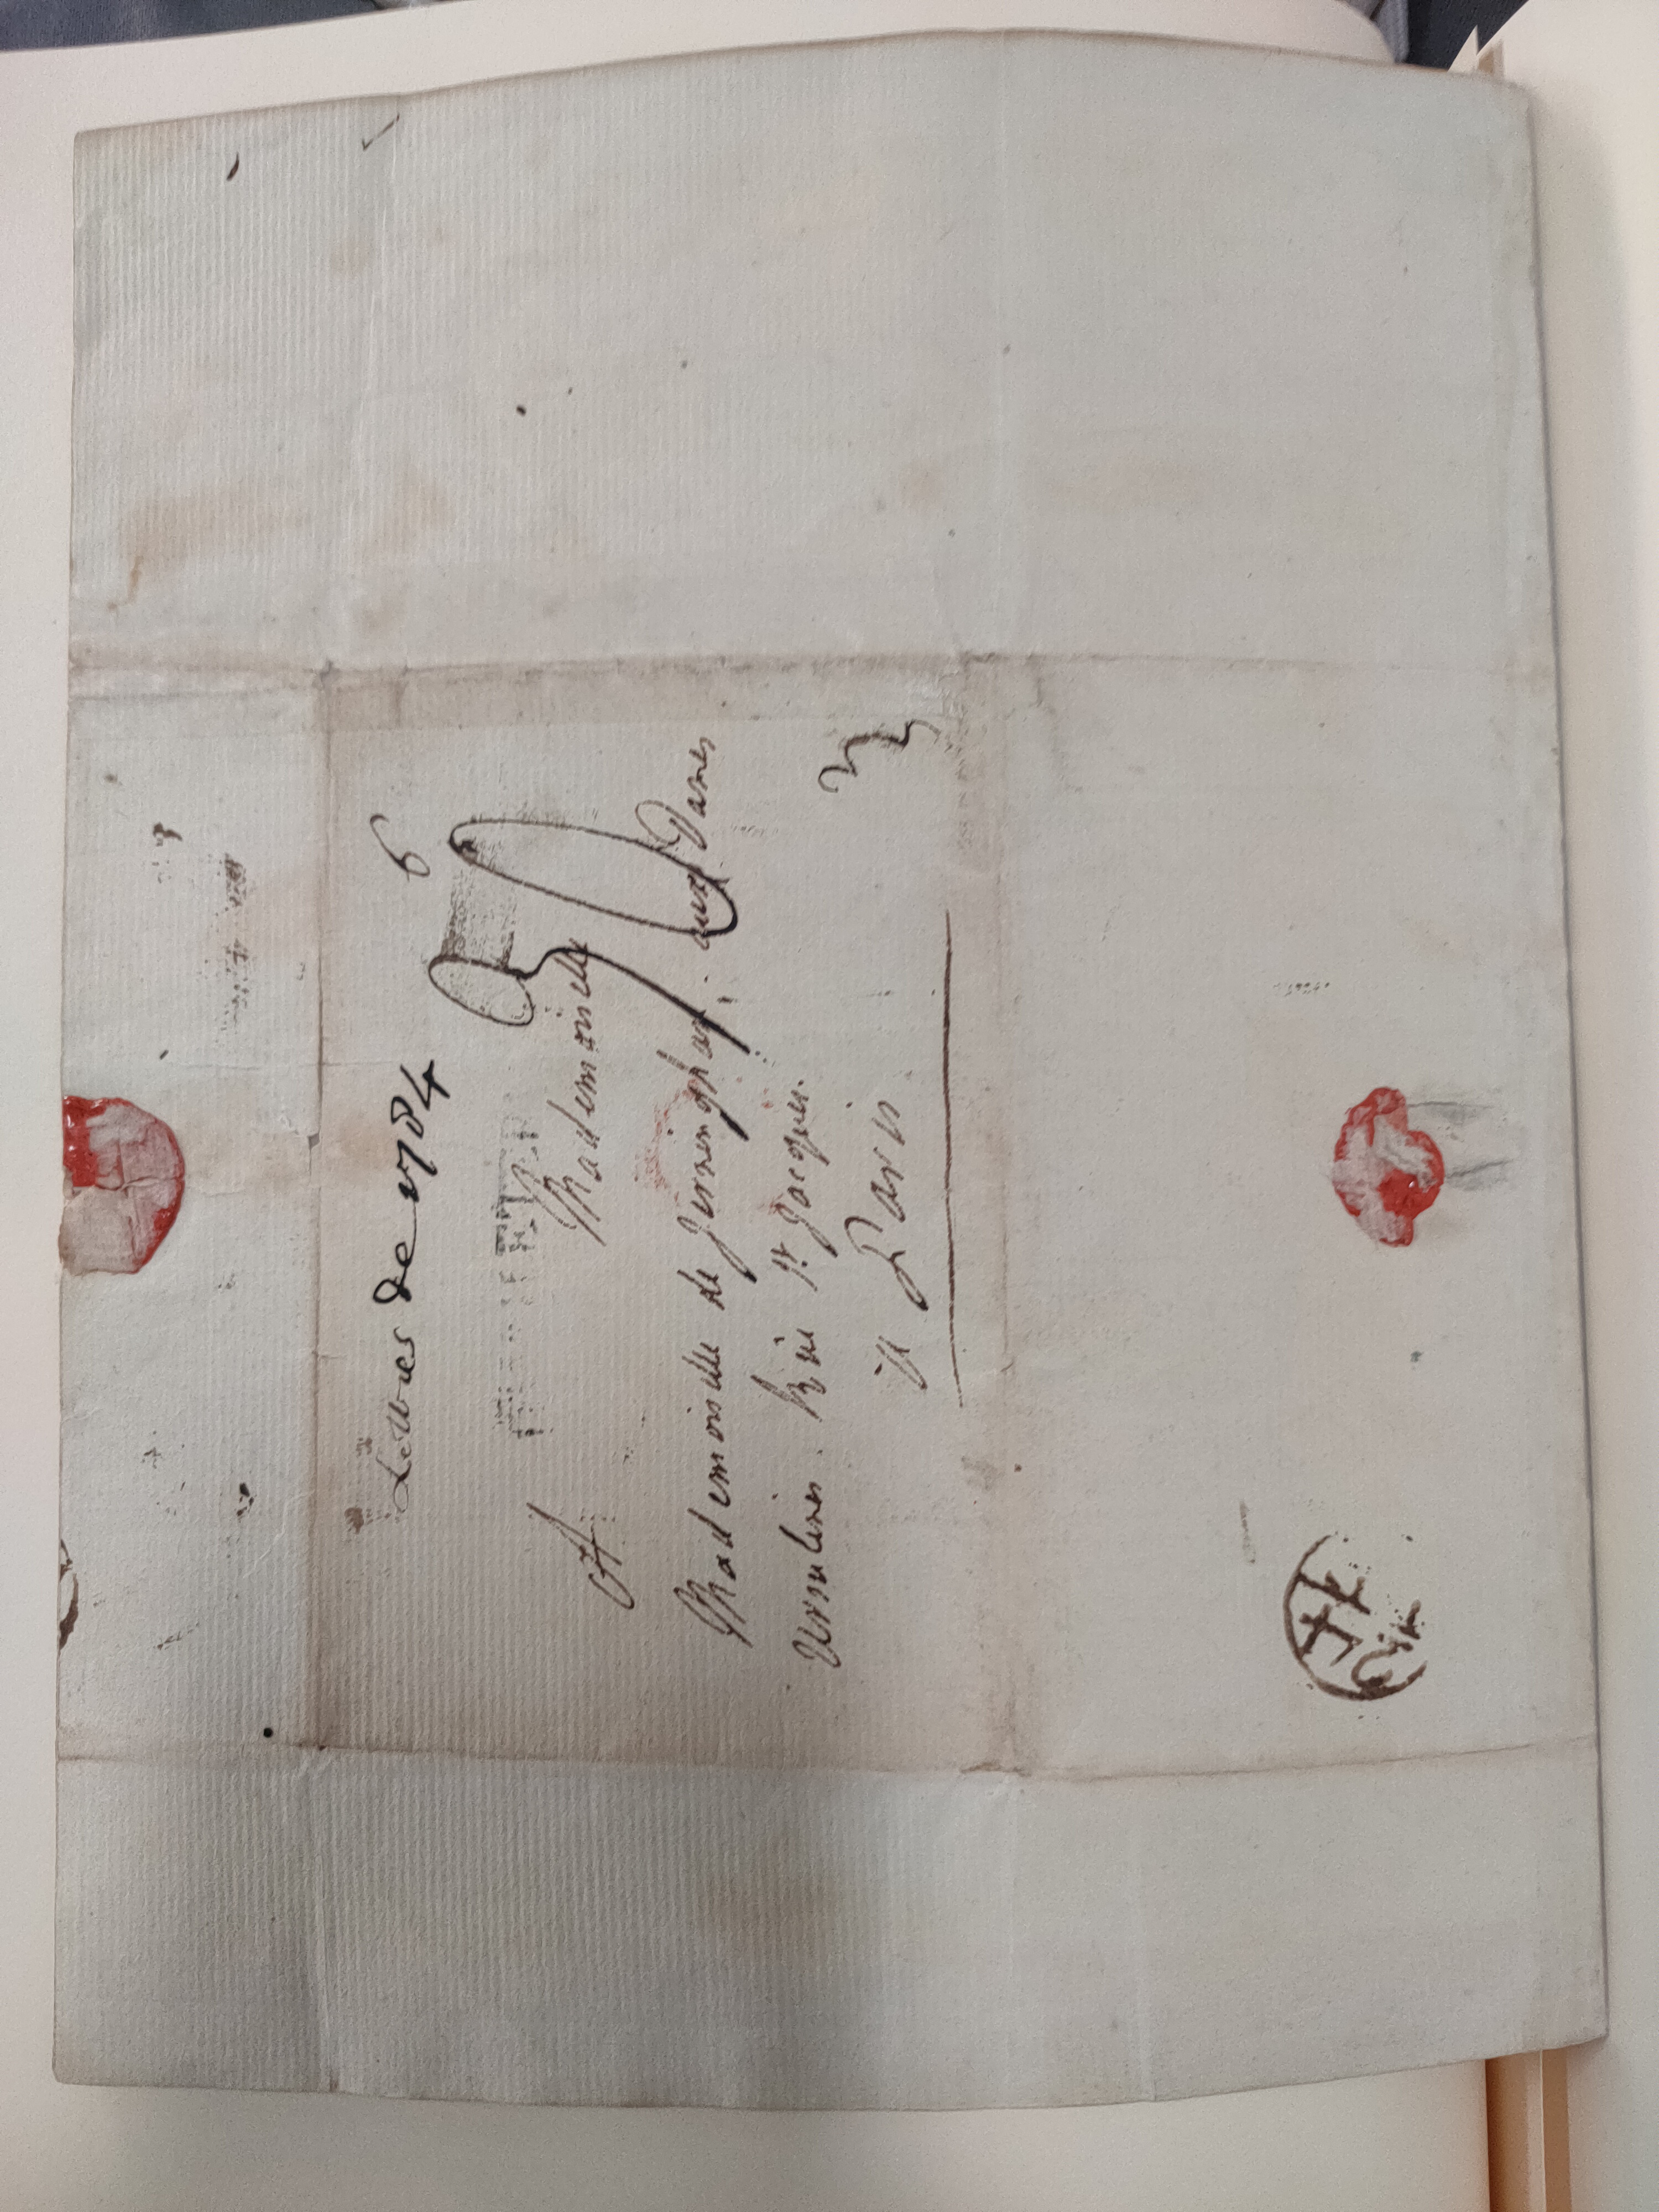 Image #4 of letter: Lady Frances Jerningham to Charlotte Jerningham, 24 December 1784